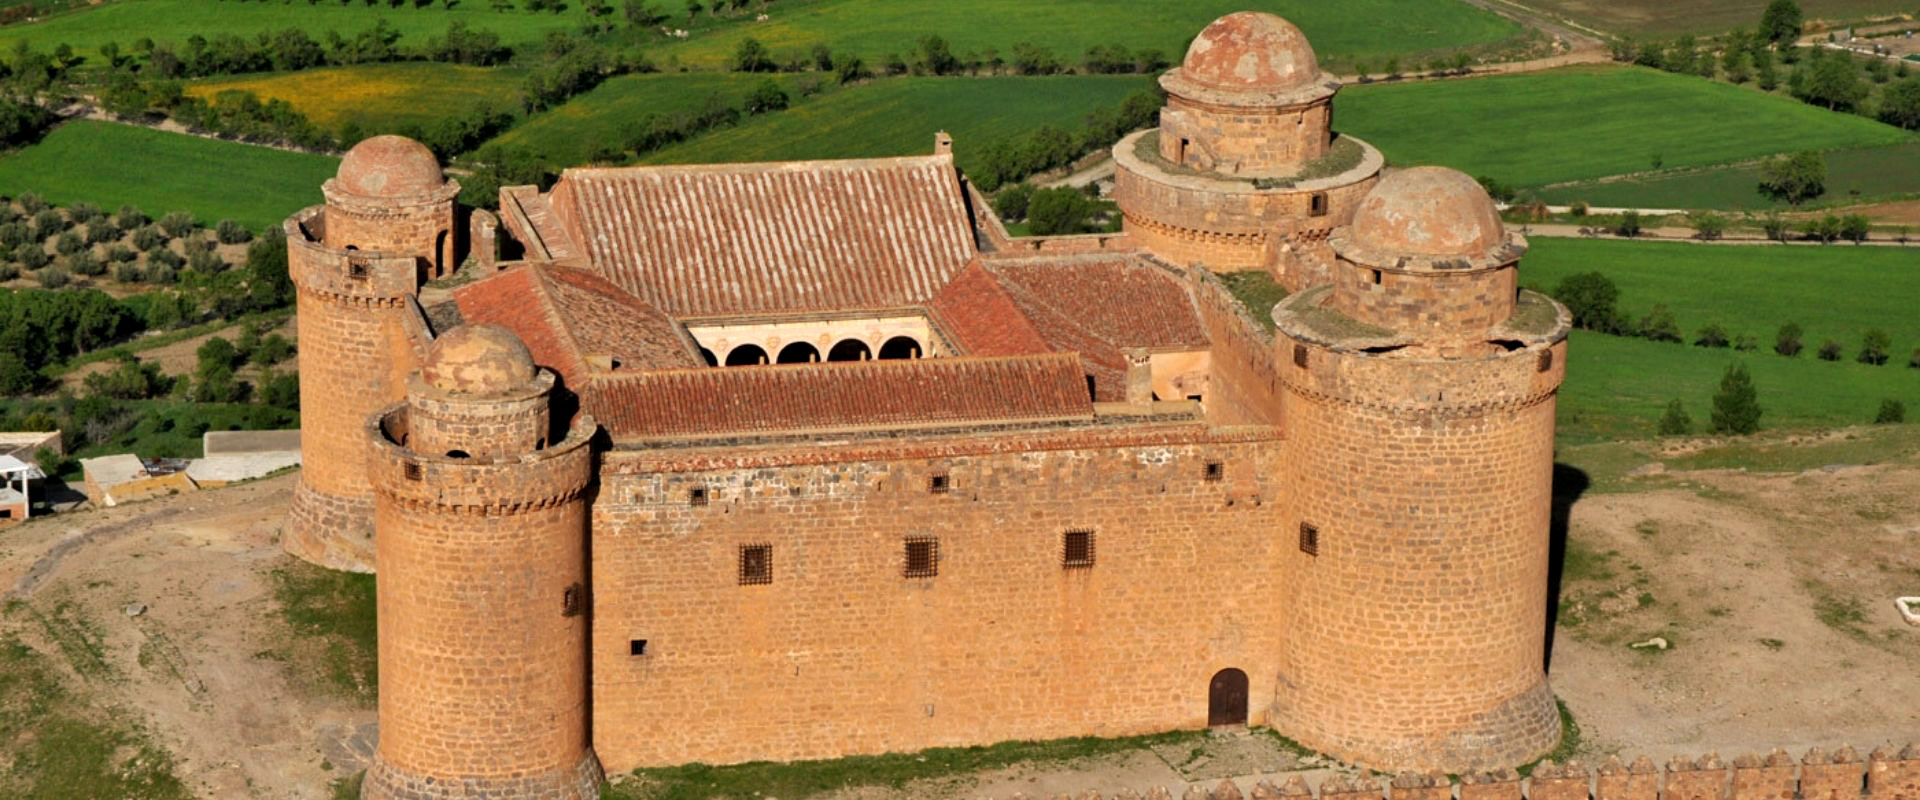 foto aerea del Castillo d ela Calahorra